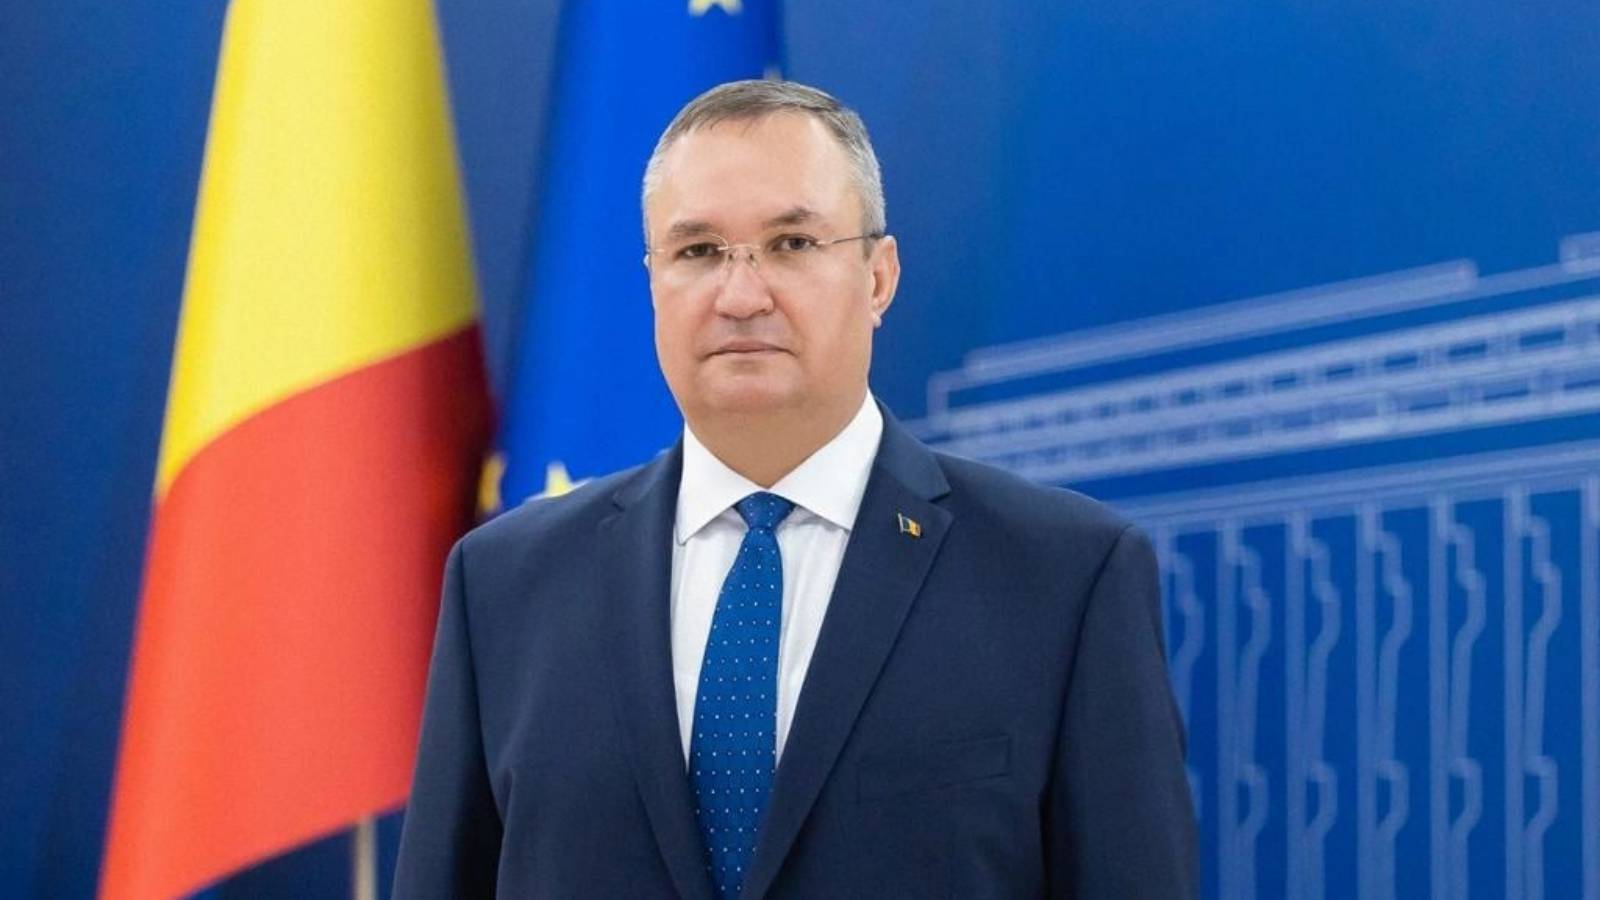 La Roumanie a la croissance économique la plus élevée de l'UE, selon le Premier ministre Nicolae Ciuca